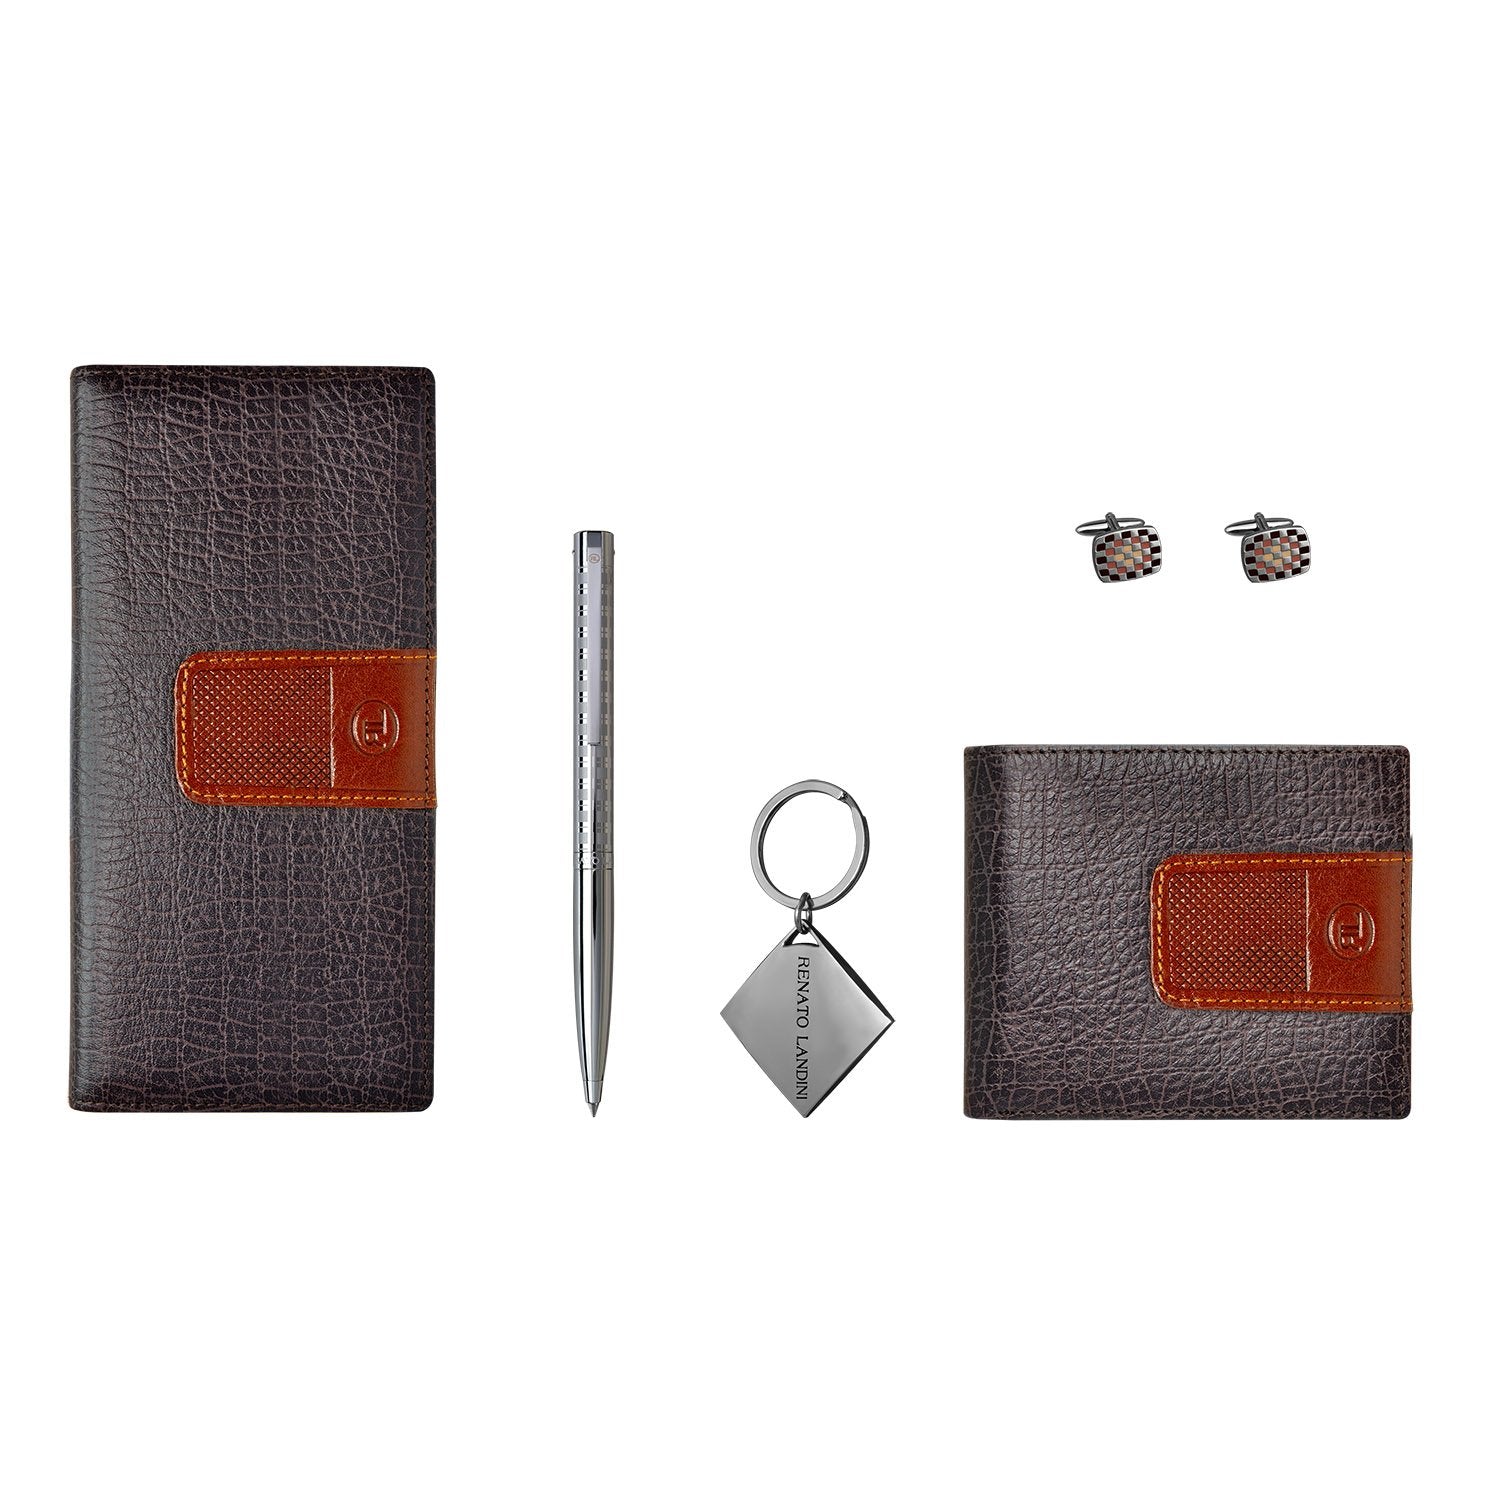 RENATO LANDINI Pen + Wallet Set + Cufflink + Key-Holder